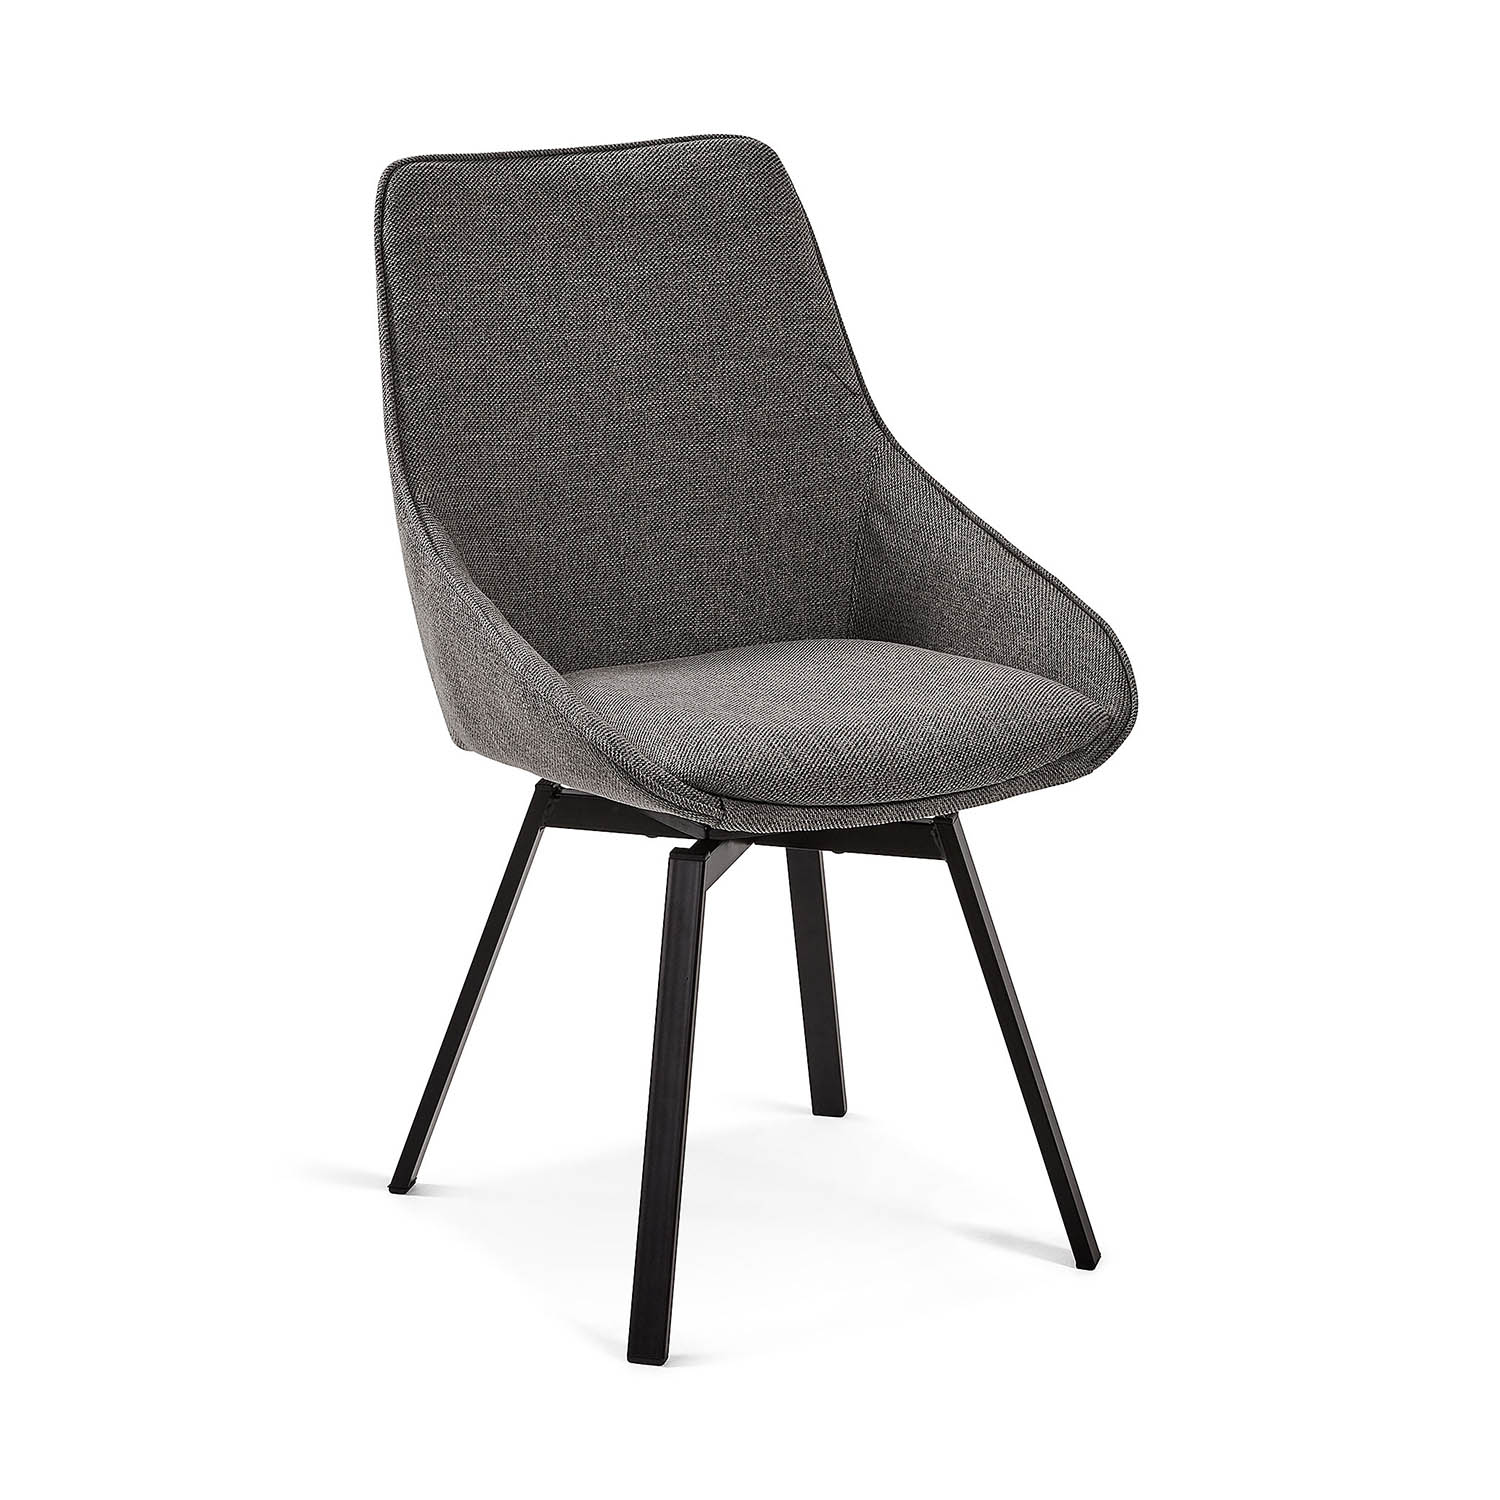 LAFORMA Haston spisebordsstol m. armlæn - mørkegrå stof og metal med krydsfiner